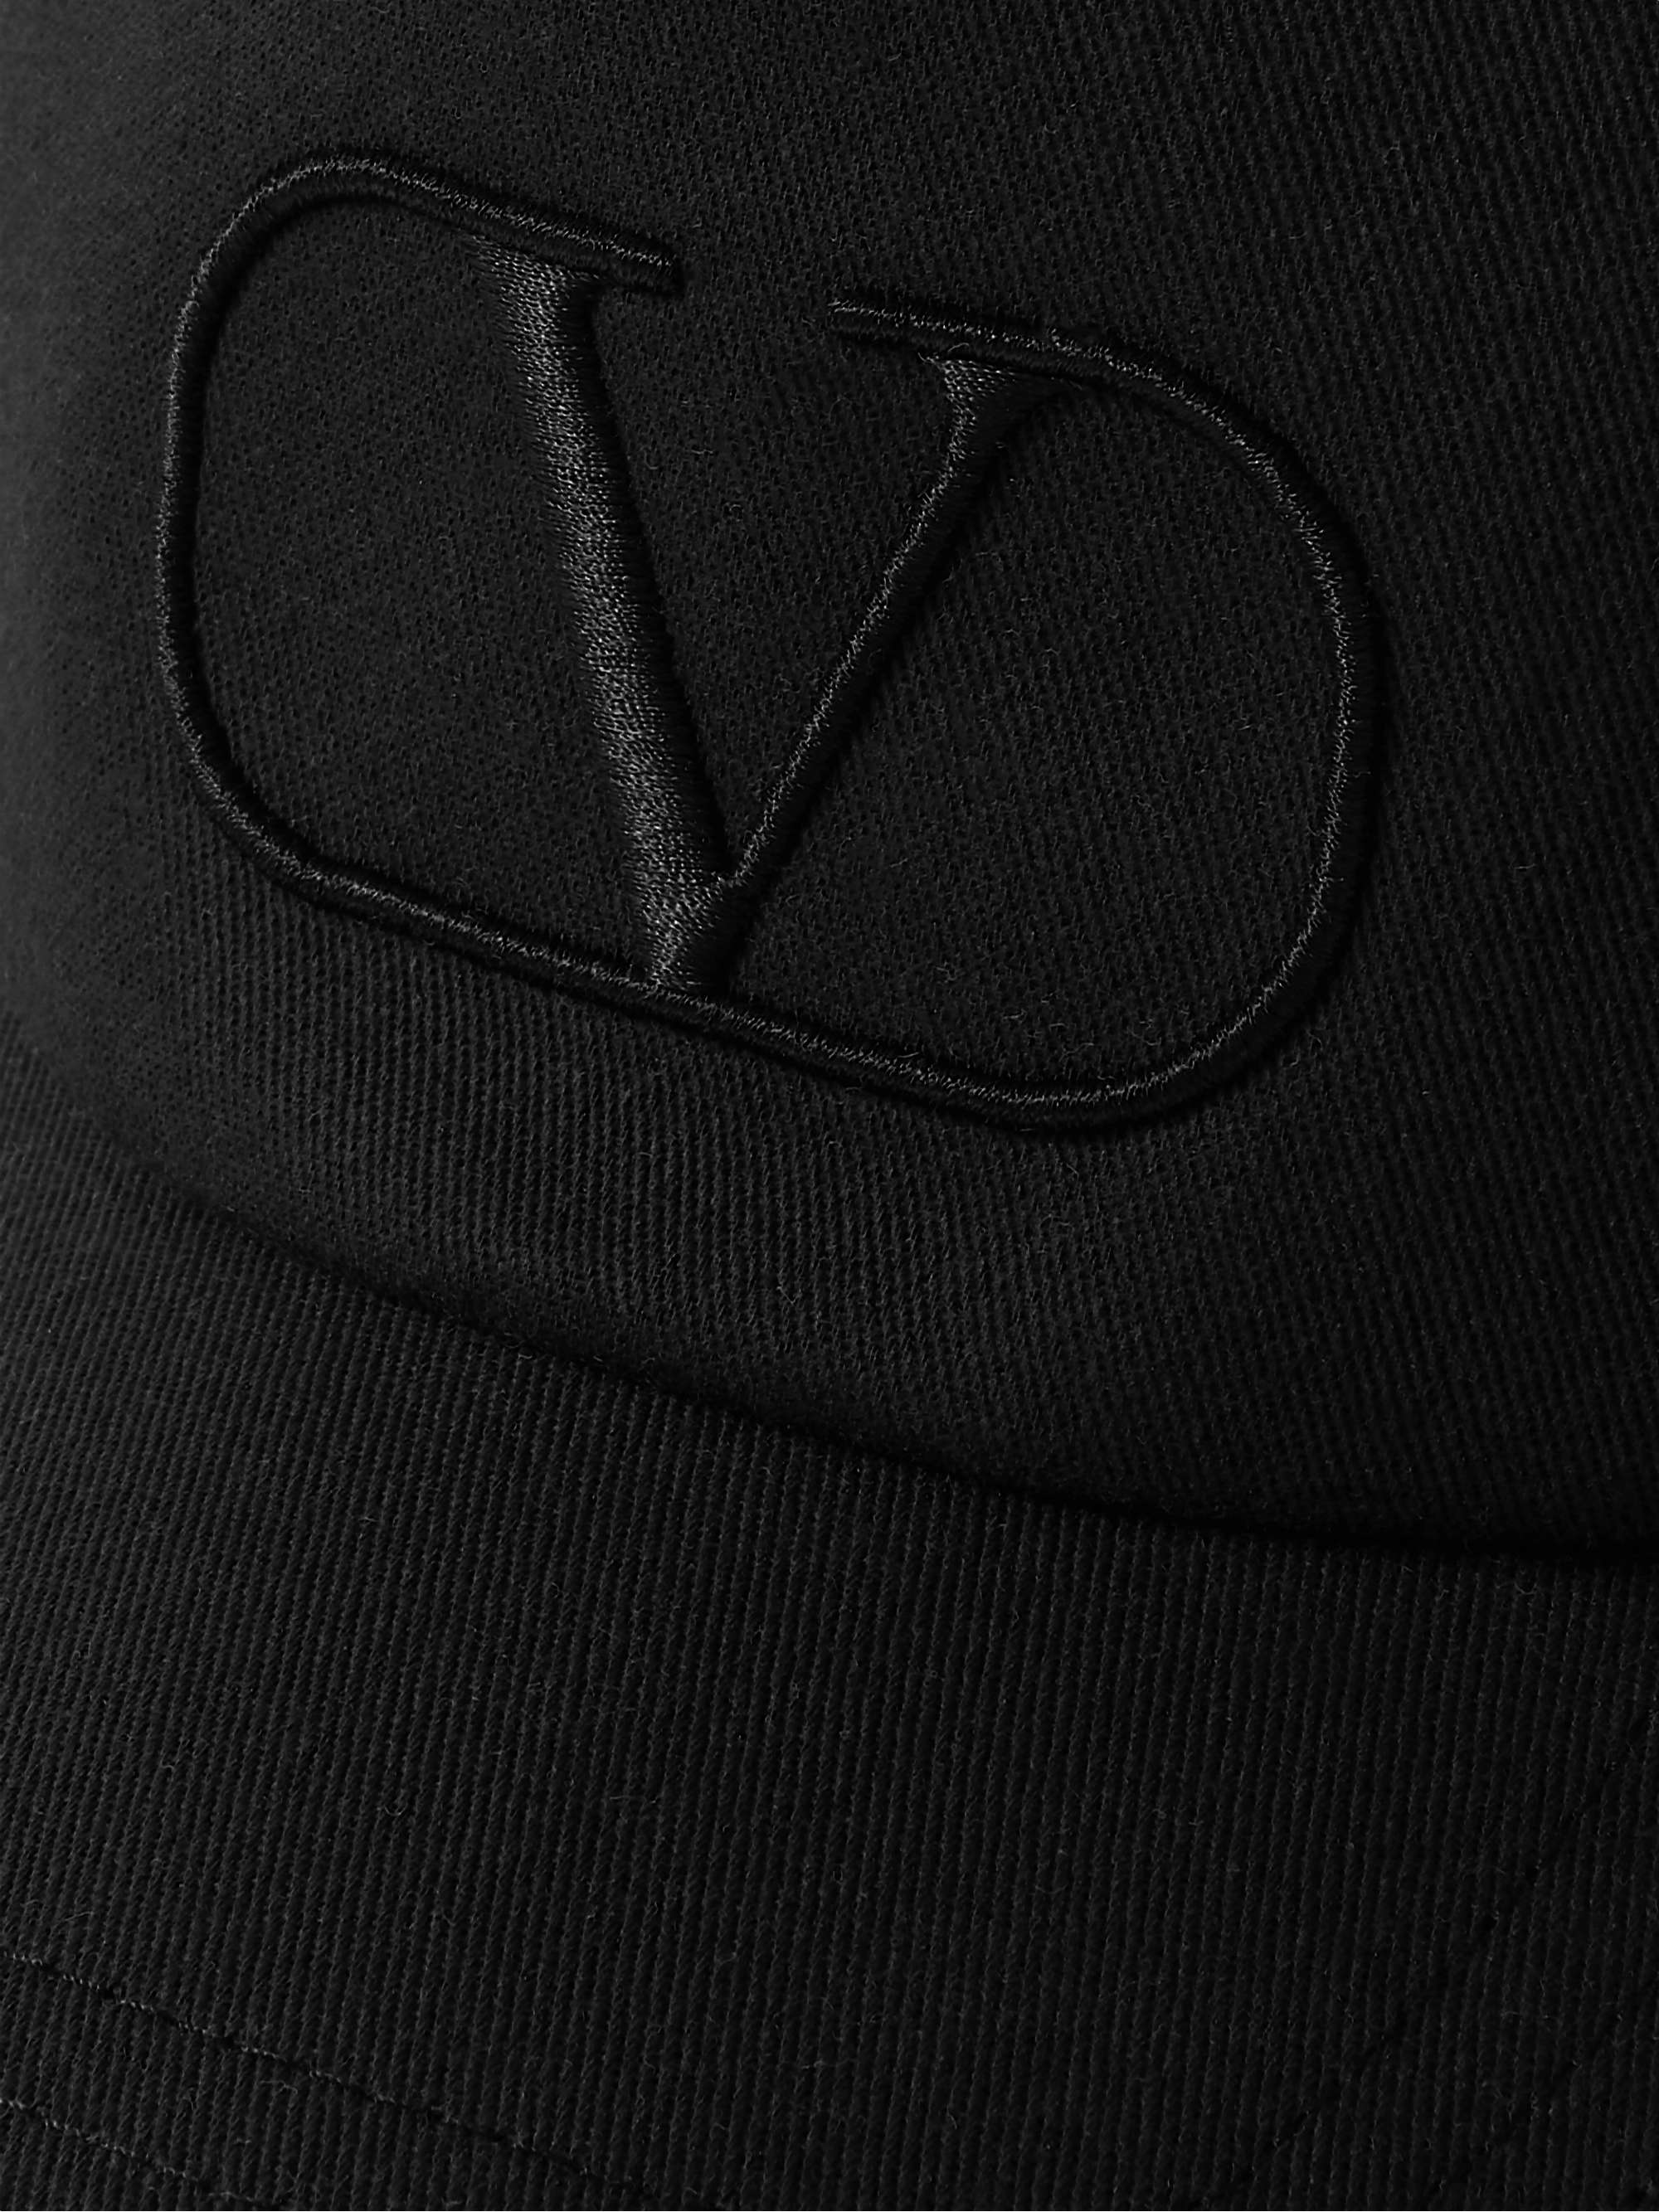 VALENTINO Valentino Garavani Logo-Embroidered Cotton-Twill Cap